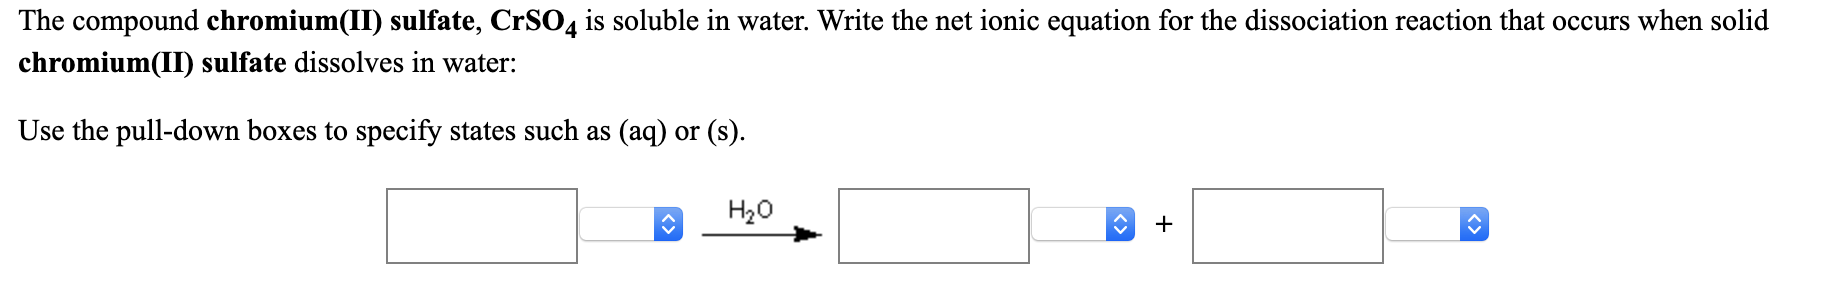 chromium sulfate and strontium net equation